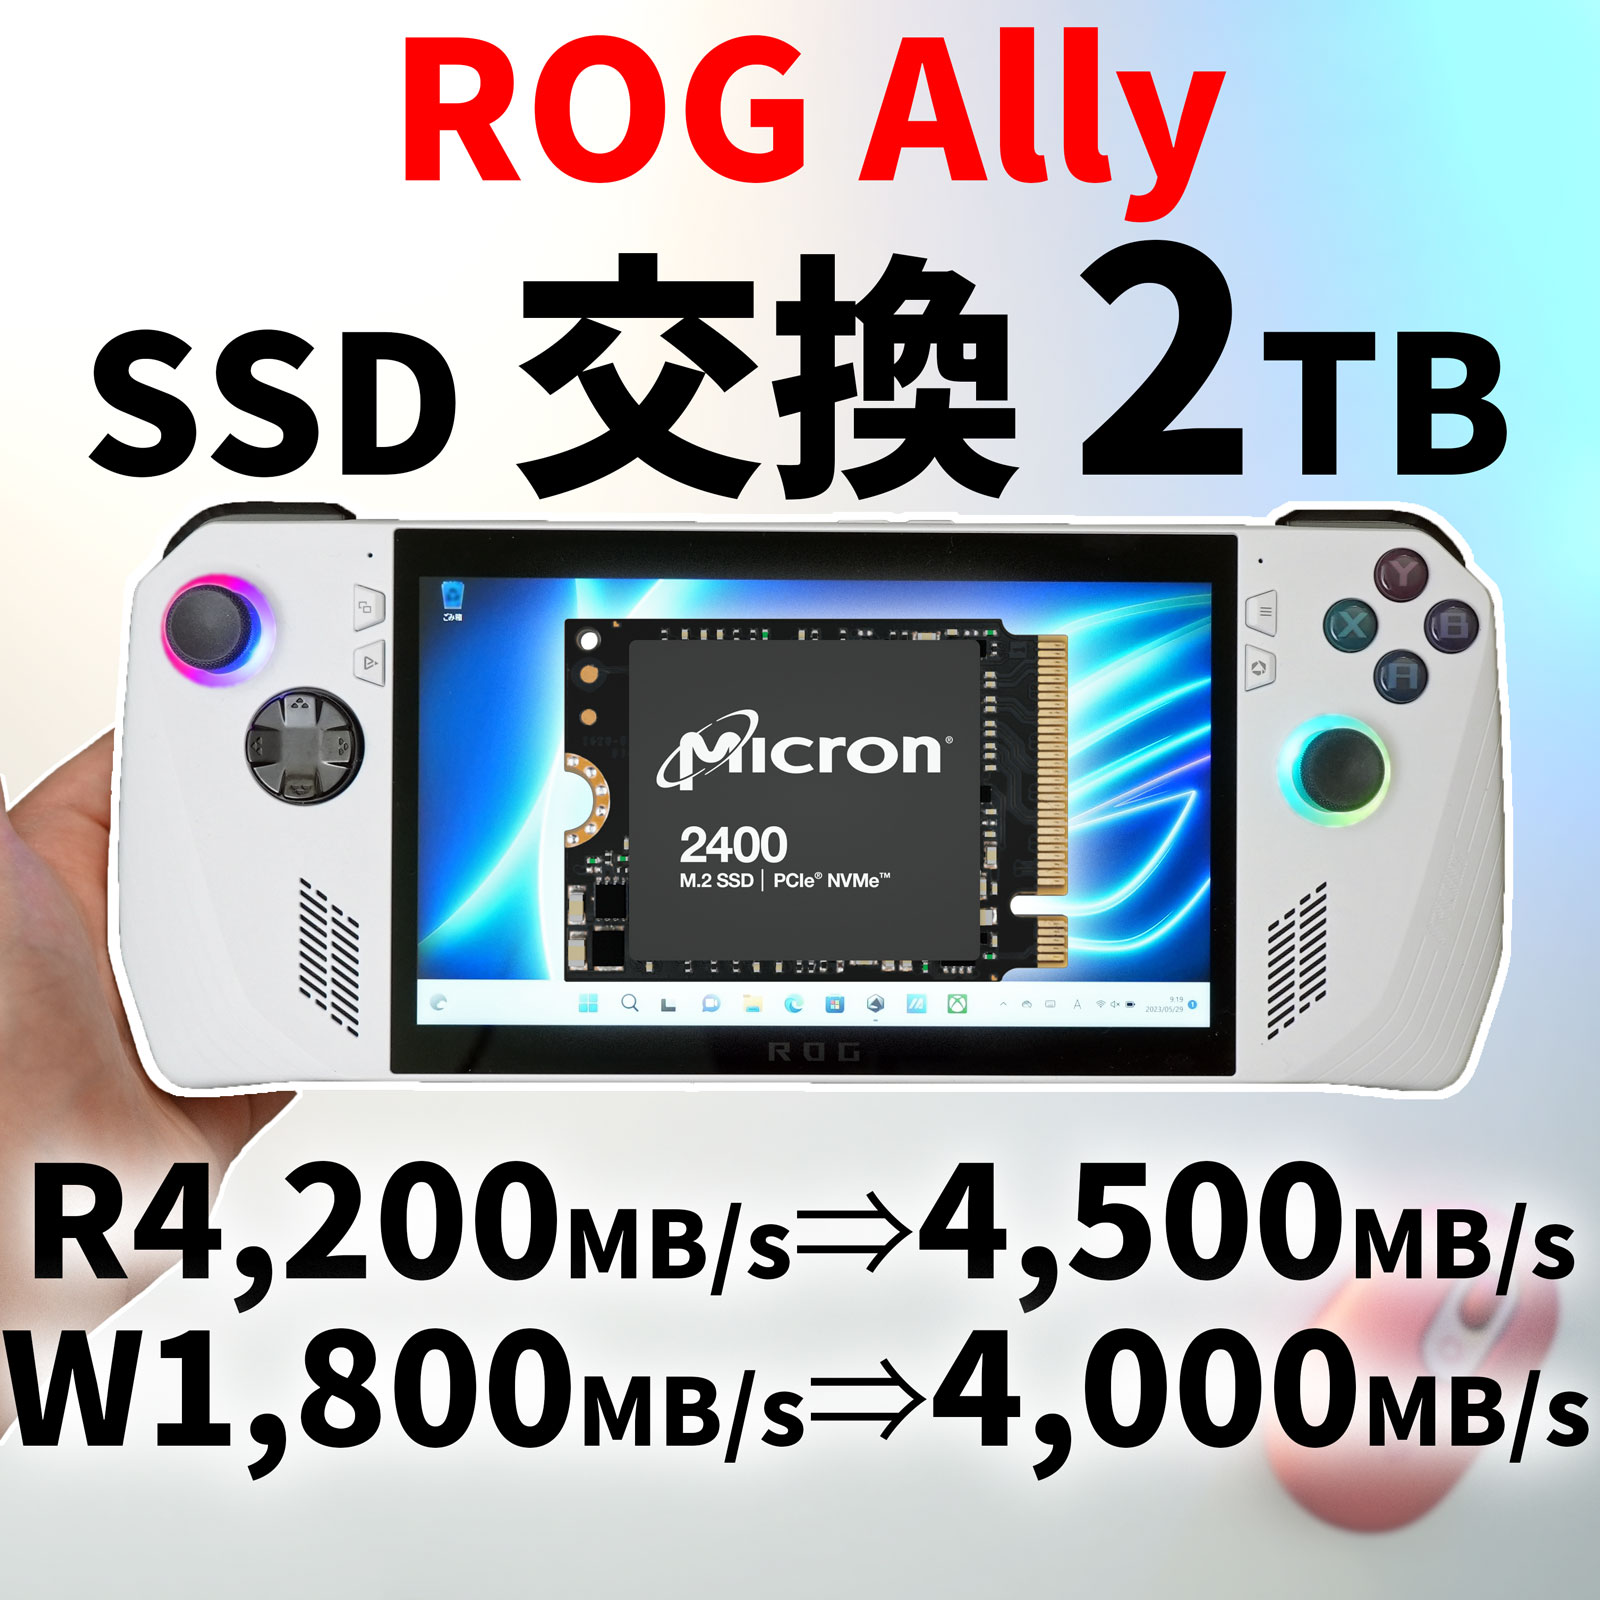 ASUS ROG Ally SSDを交換し2TB / 1TBにする - PCまなぶ